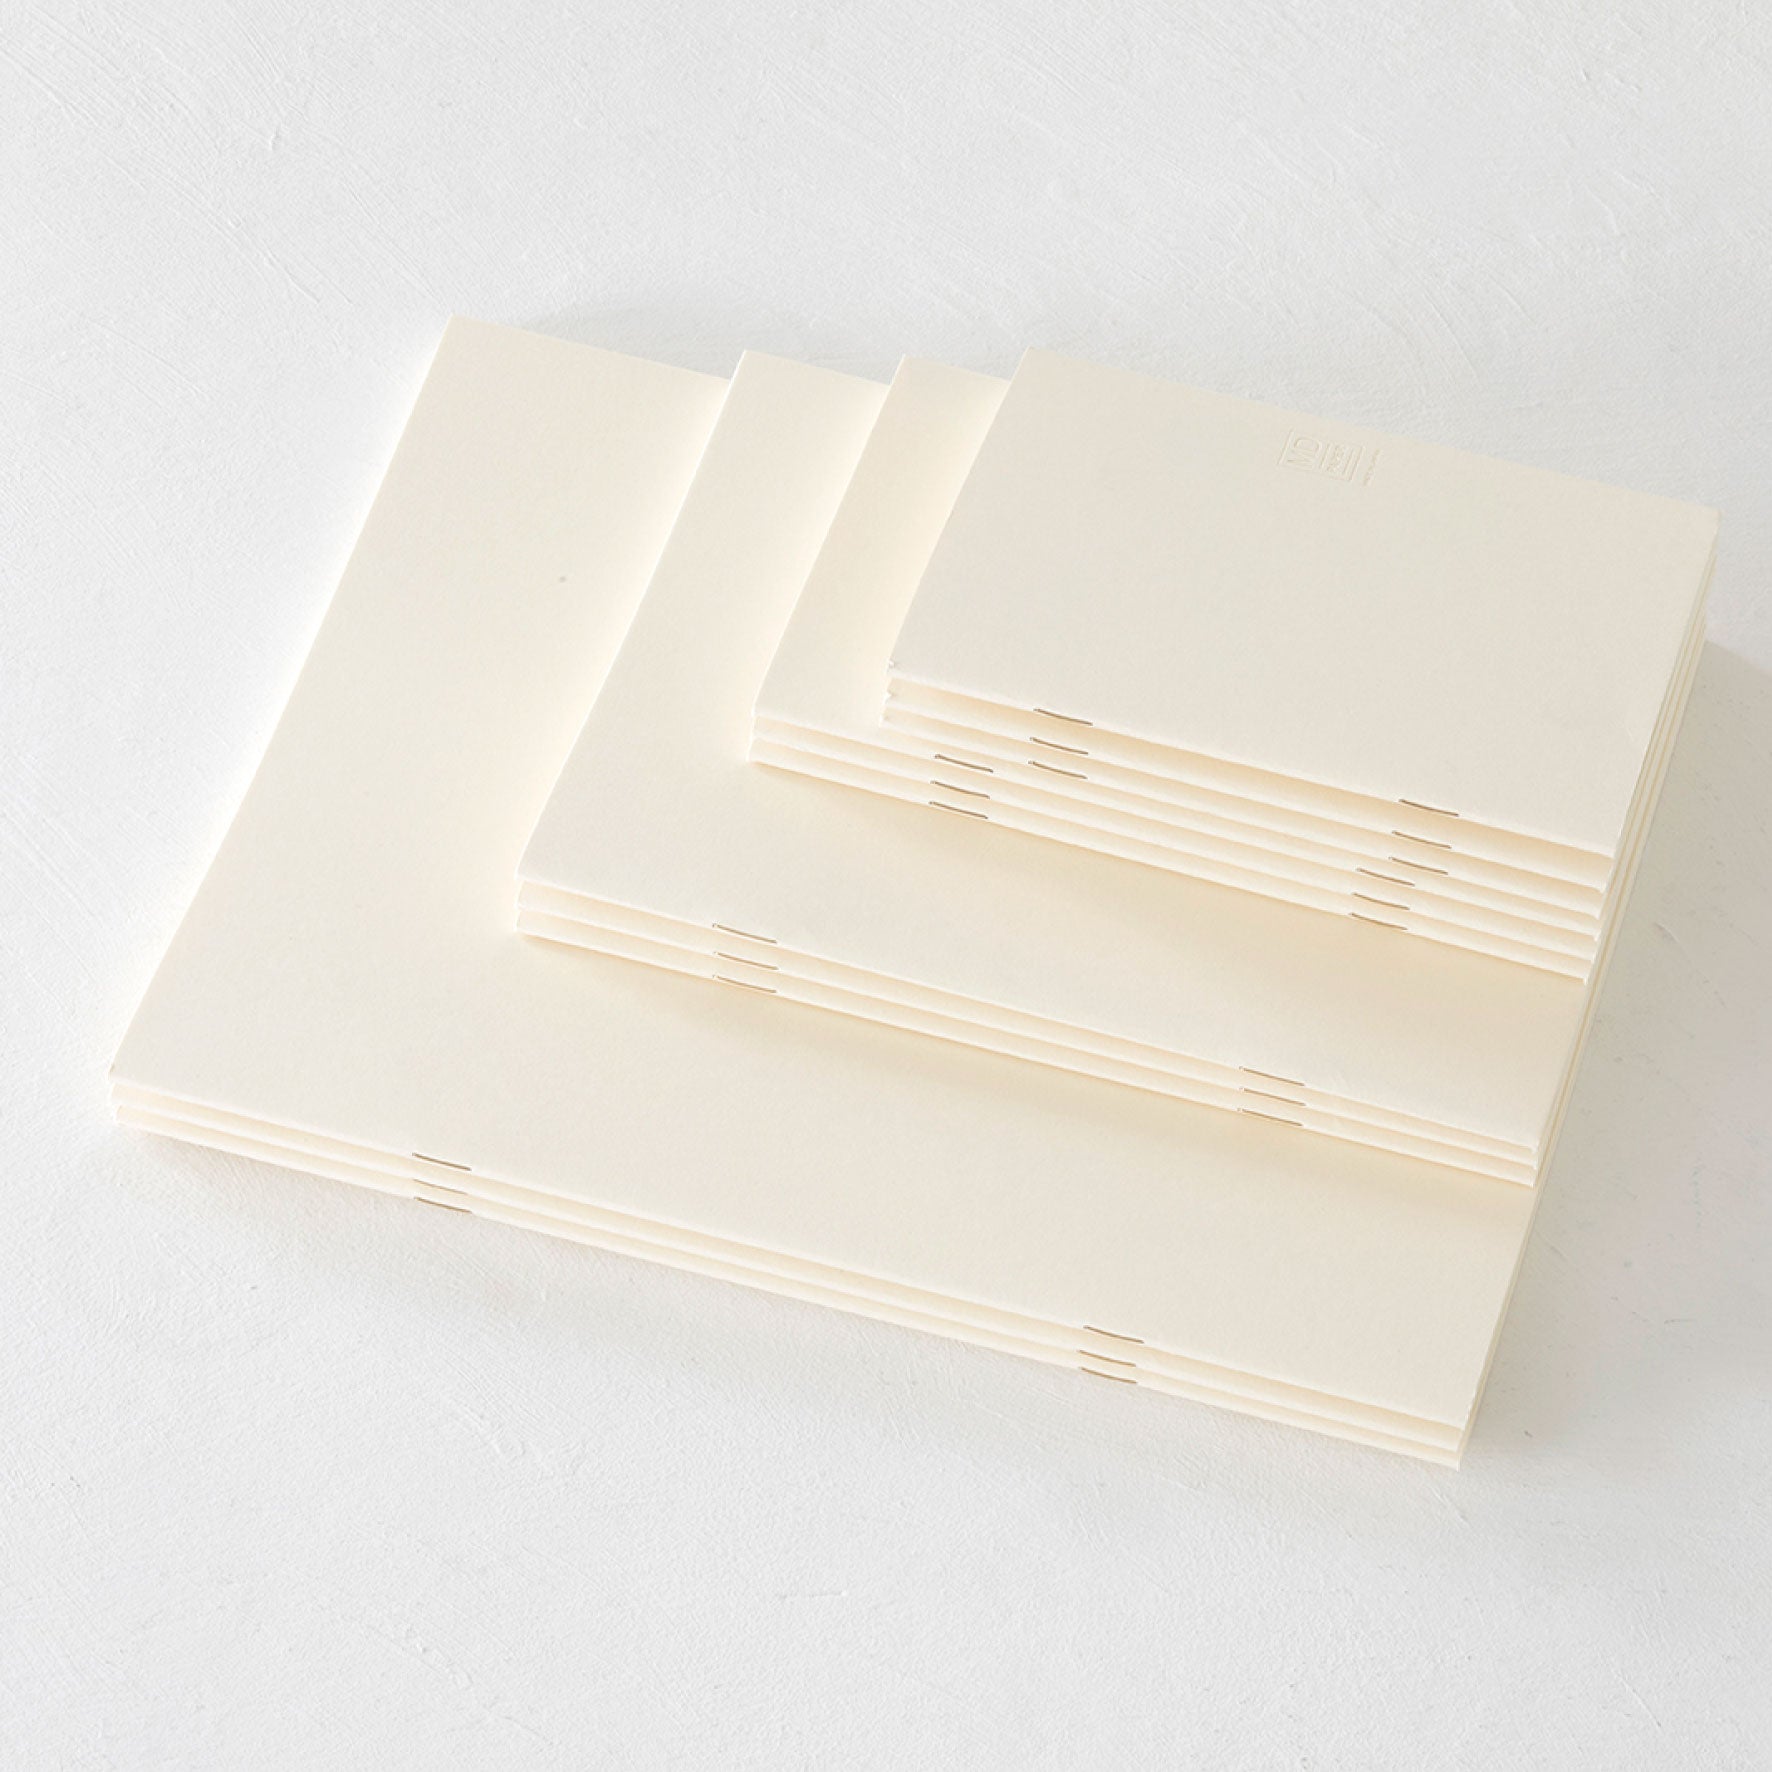 Midori - Notebook - MD Paper - Light - A5 - Blank